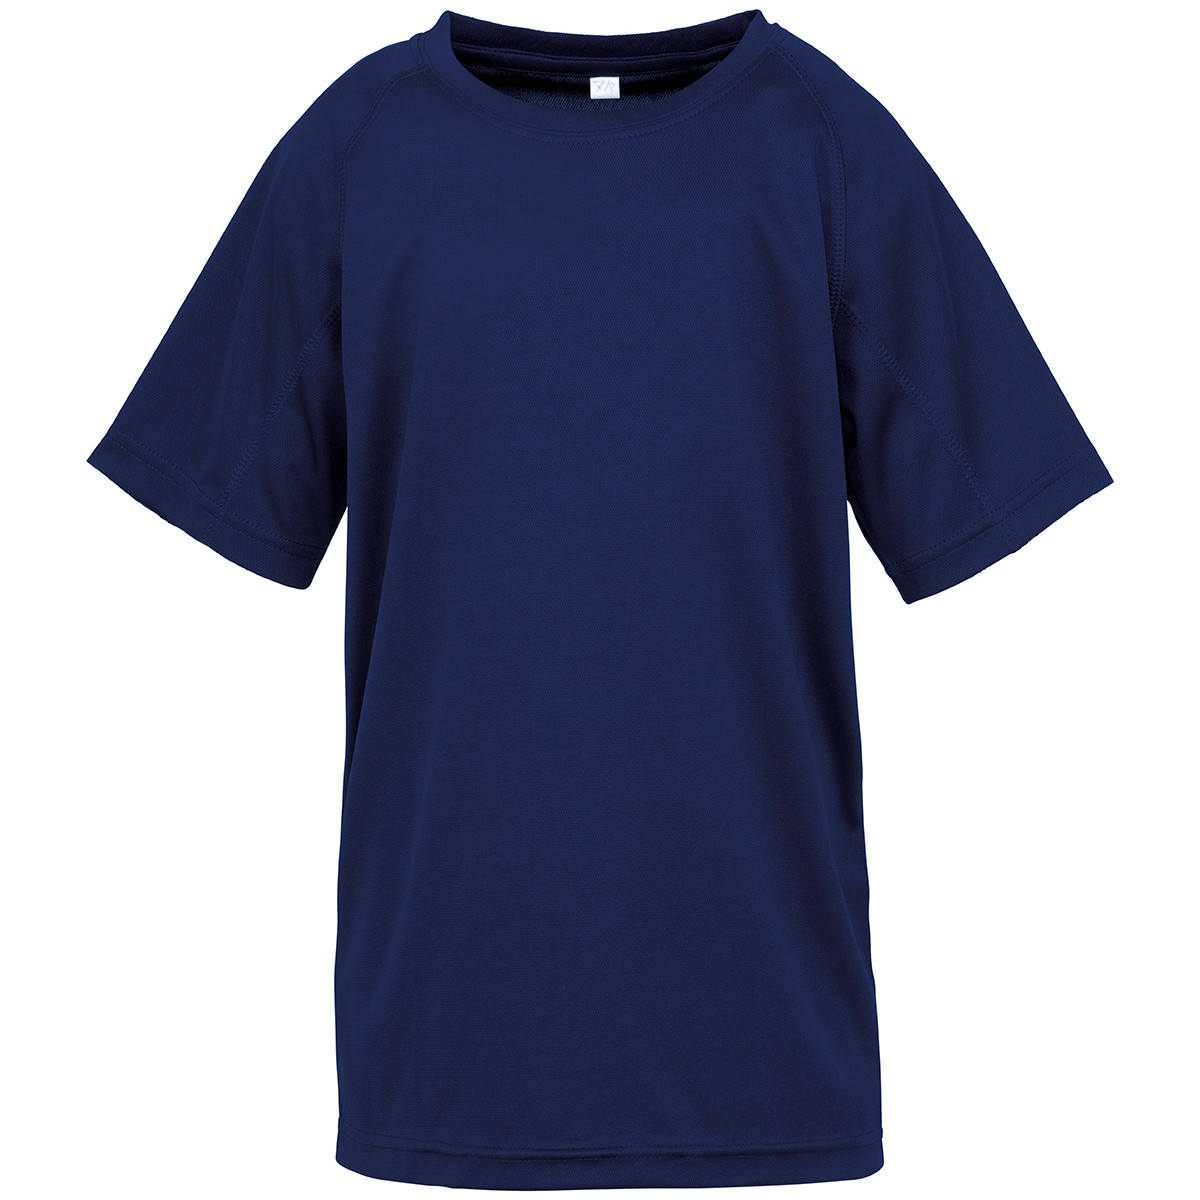 Vêtements Enfant T-shirts manches courtes Spiro SR287B Bleu